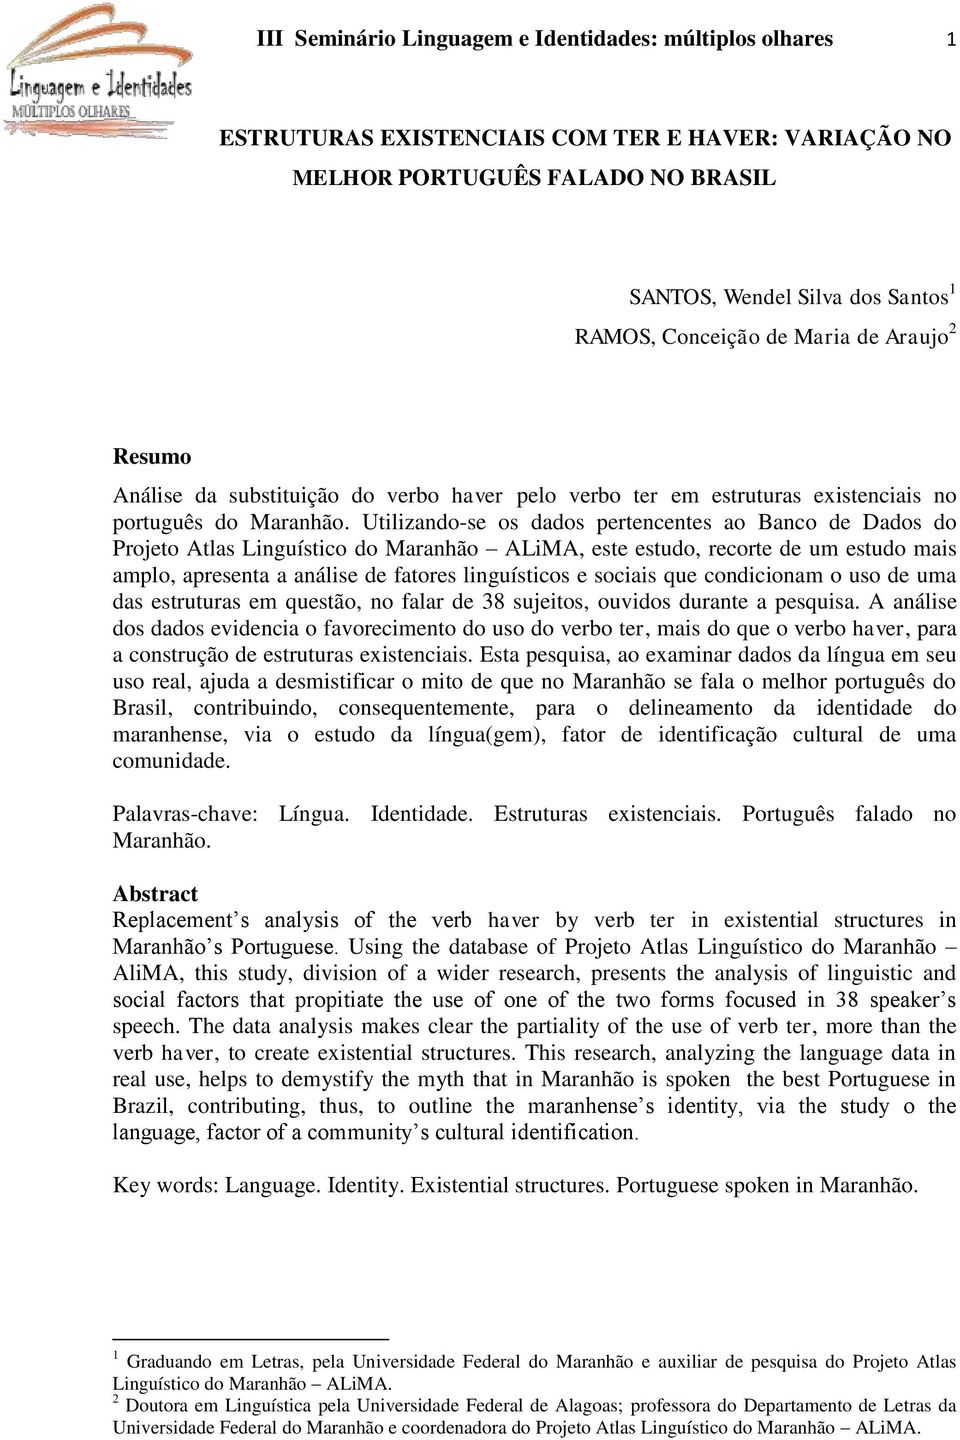 Utilizando-se os dados pertencentes ao Banco de Dados do Projeto Atlas Linguístico do Maranhão ALiMA, este estudo, recorte de um estudo mais amplo, apresenta a análise de fatores linguísticos e